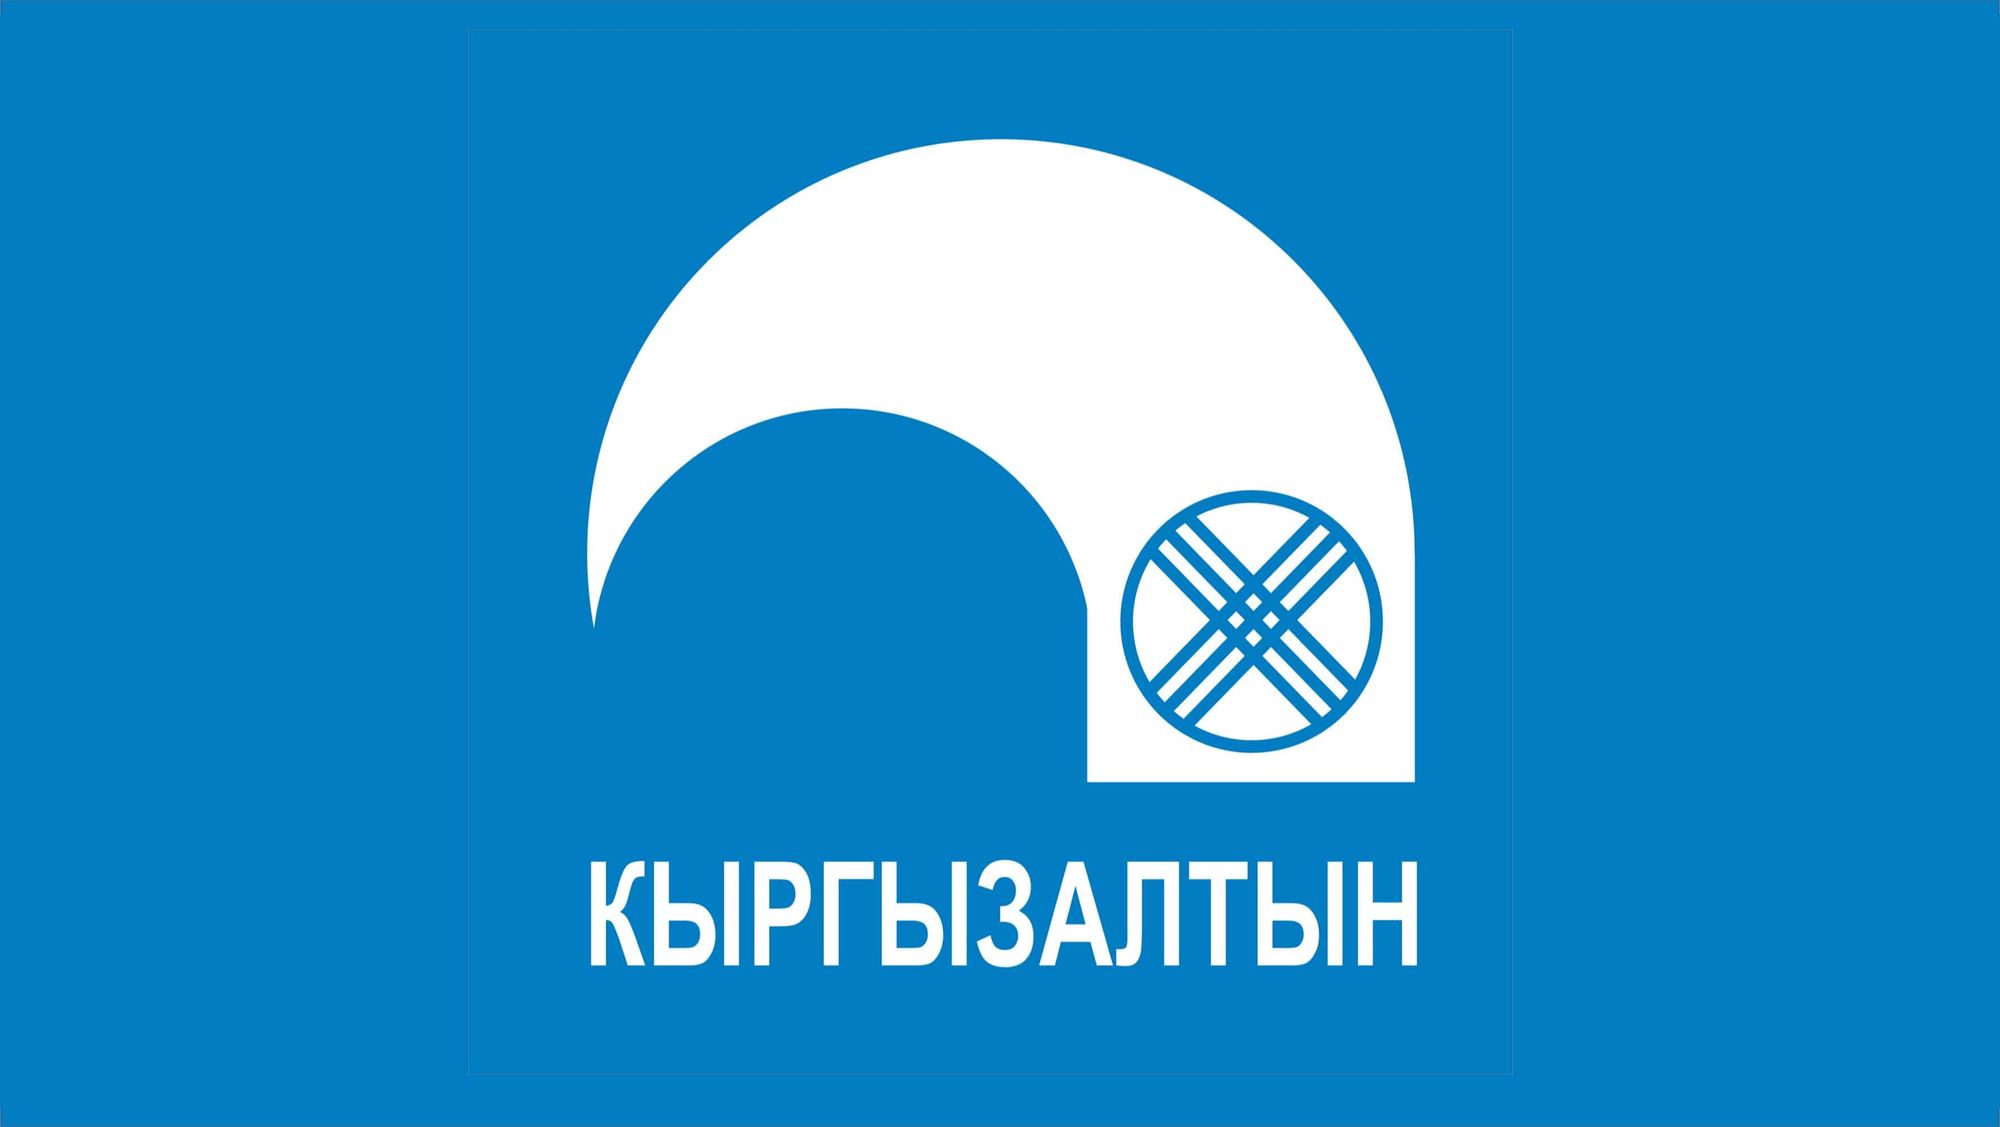 В «Кыргызалтыне» практически полностью сменился состав совета директоров